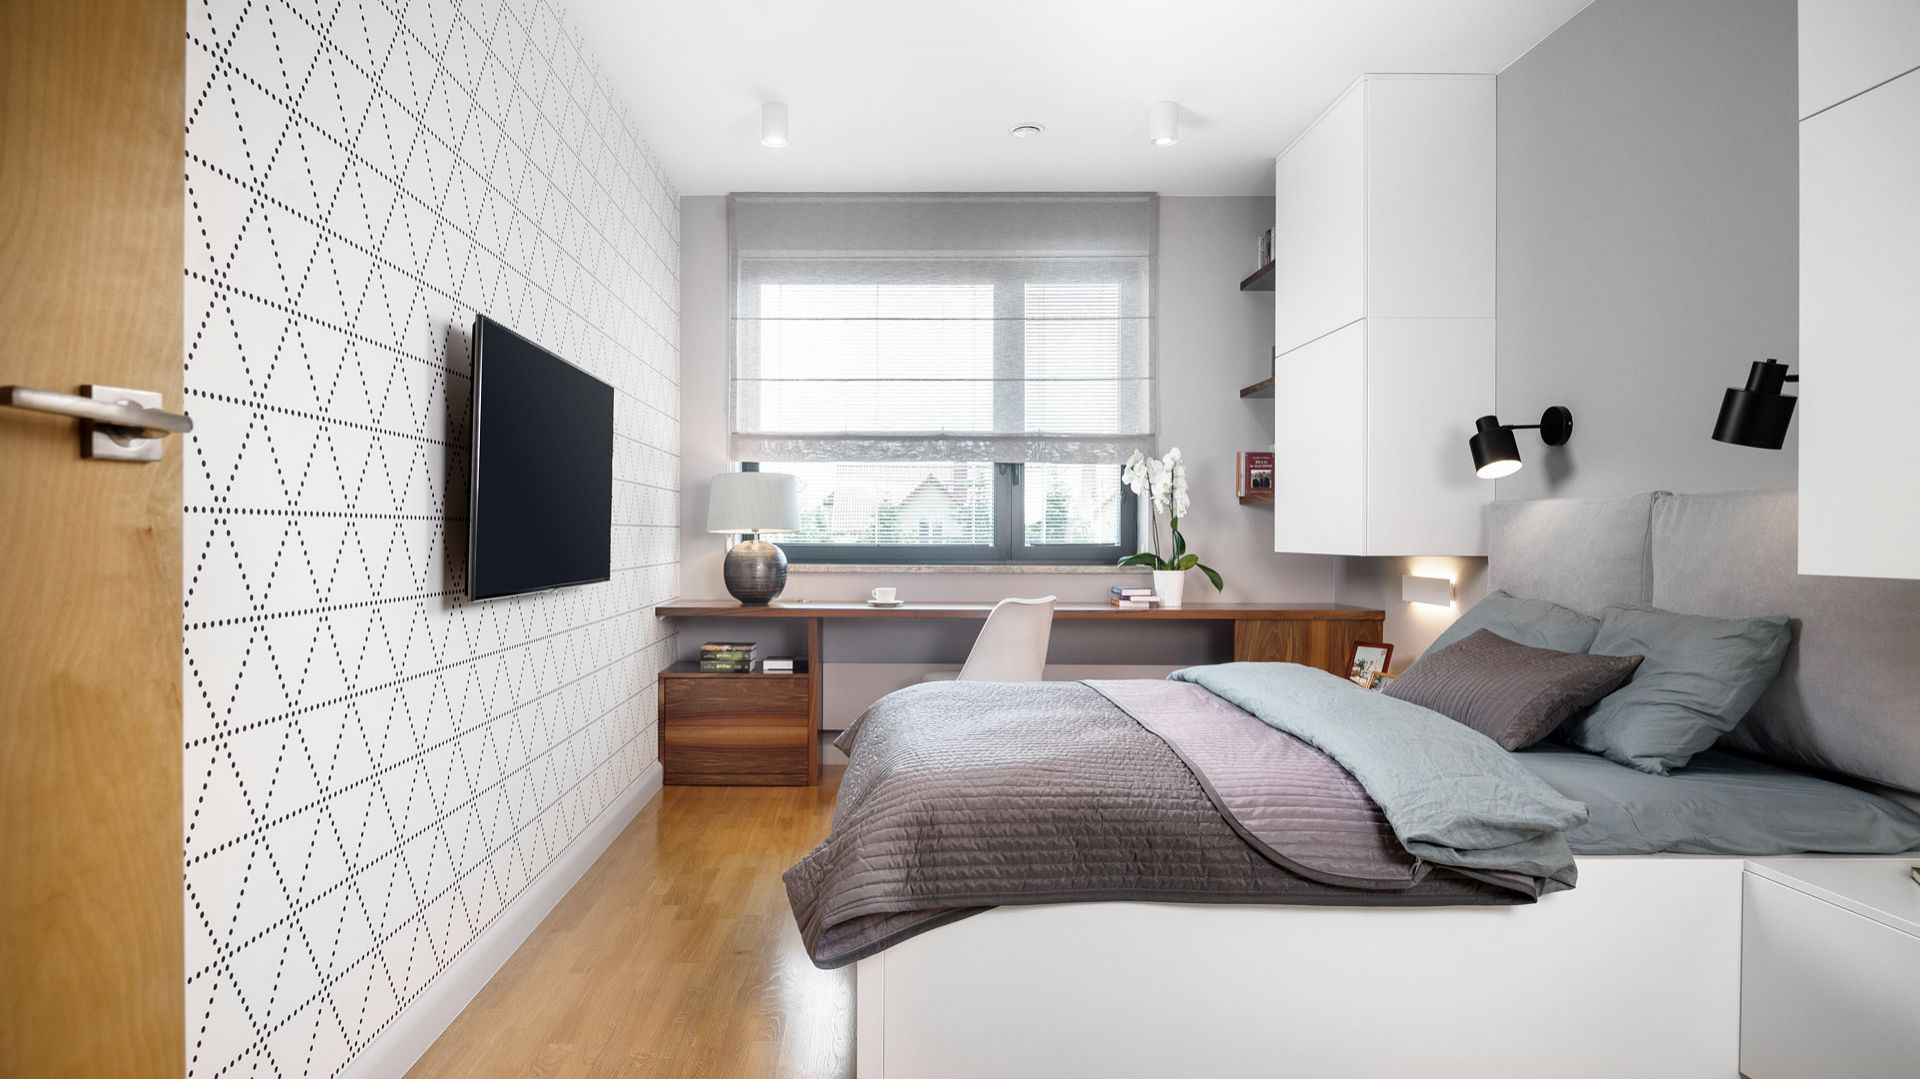 Urządzamy sypialnię - zobacz 20 ciekawych pomysłów z polskich mieszkań!